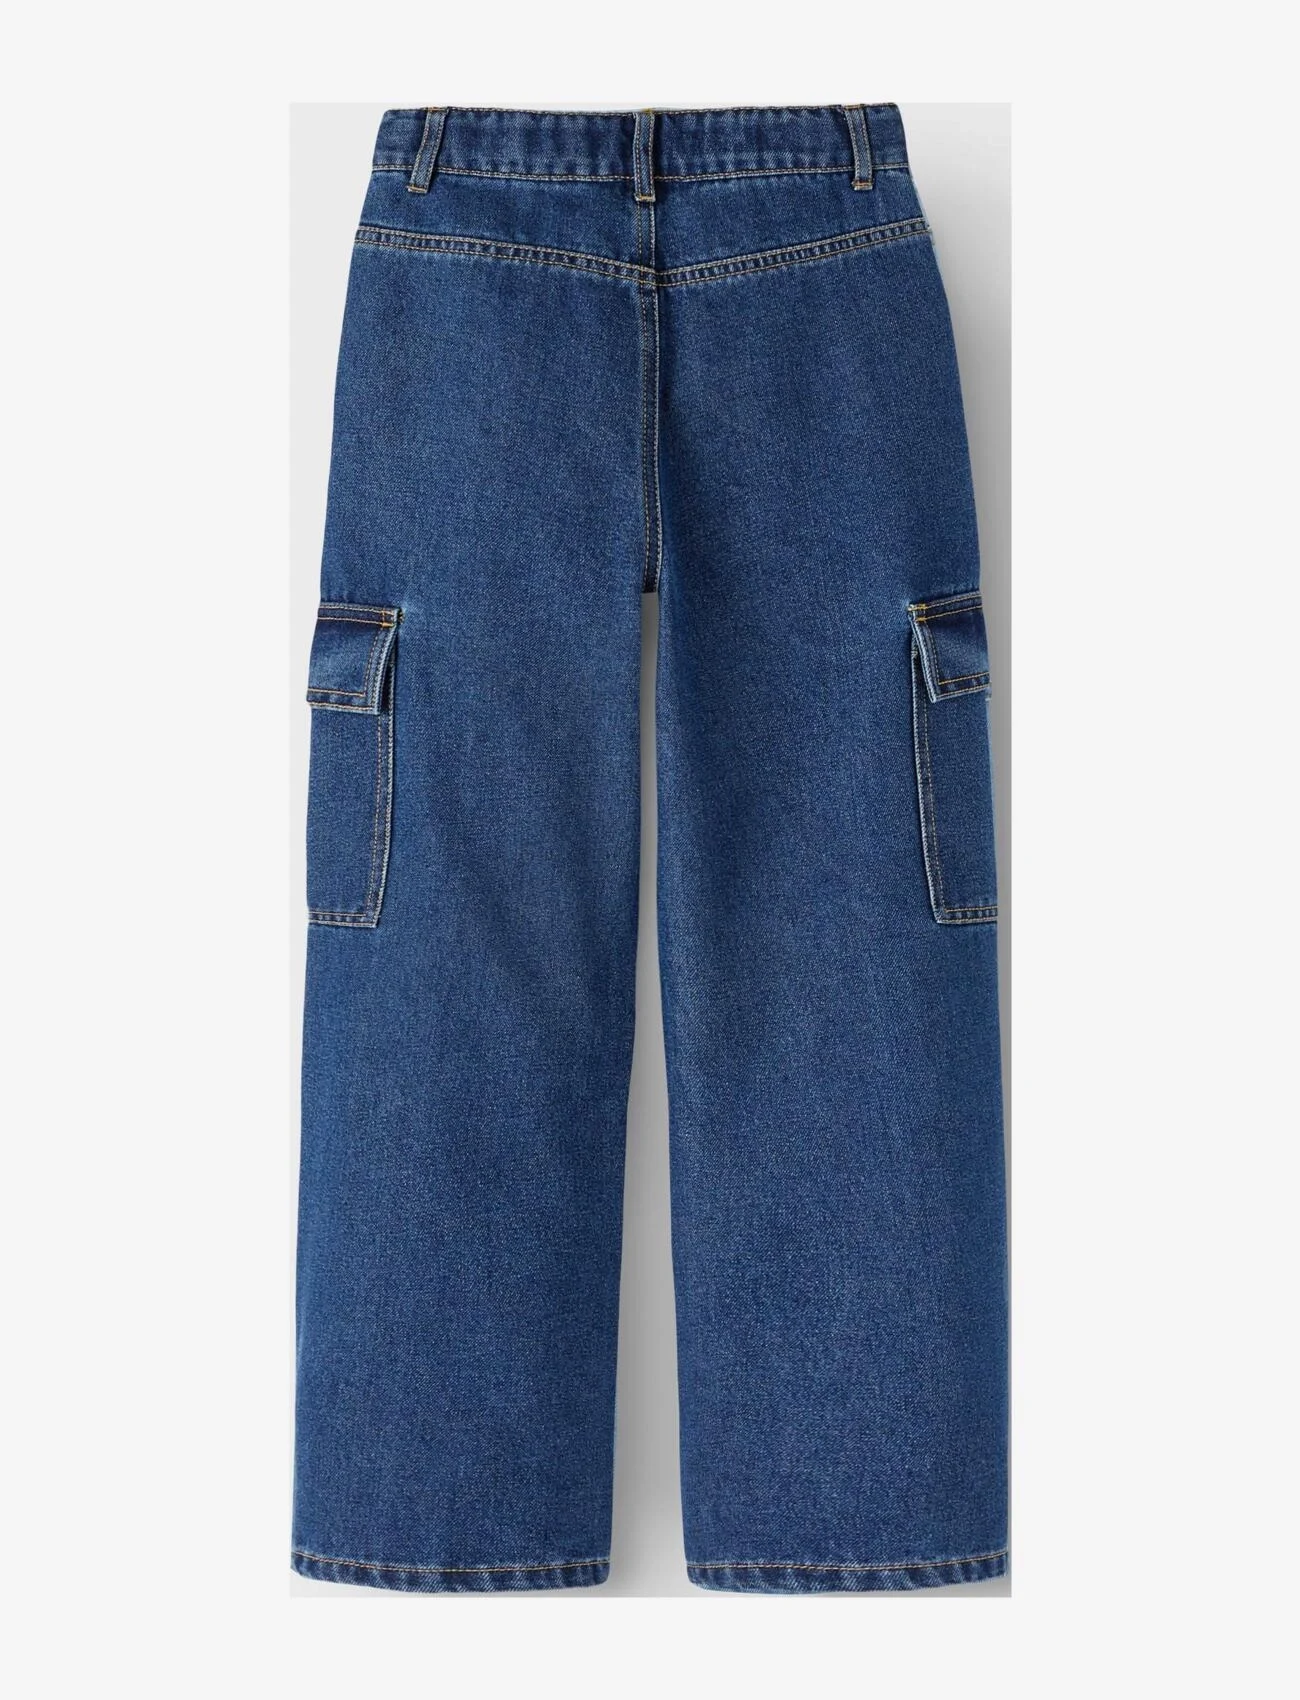 name it - NKFROSE HW WIDE CARGO JEANS 6190-BS NOOS - brede jeans - dark blue denim - 1